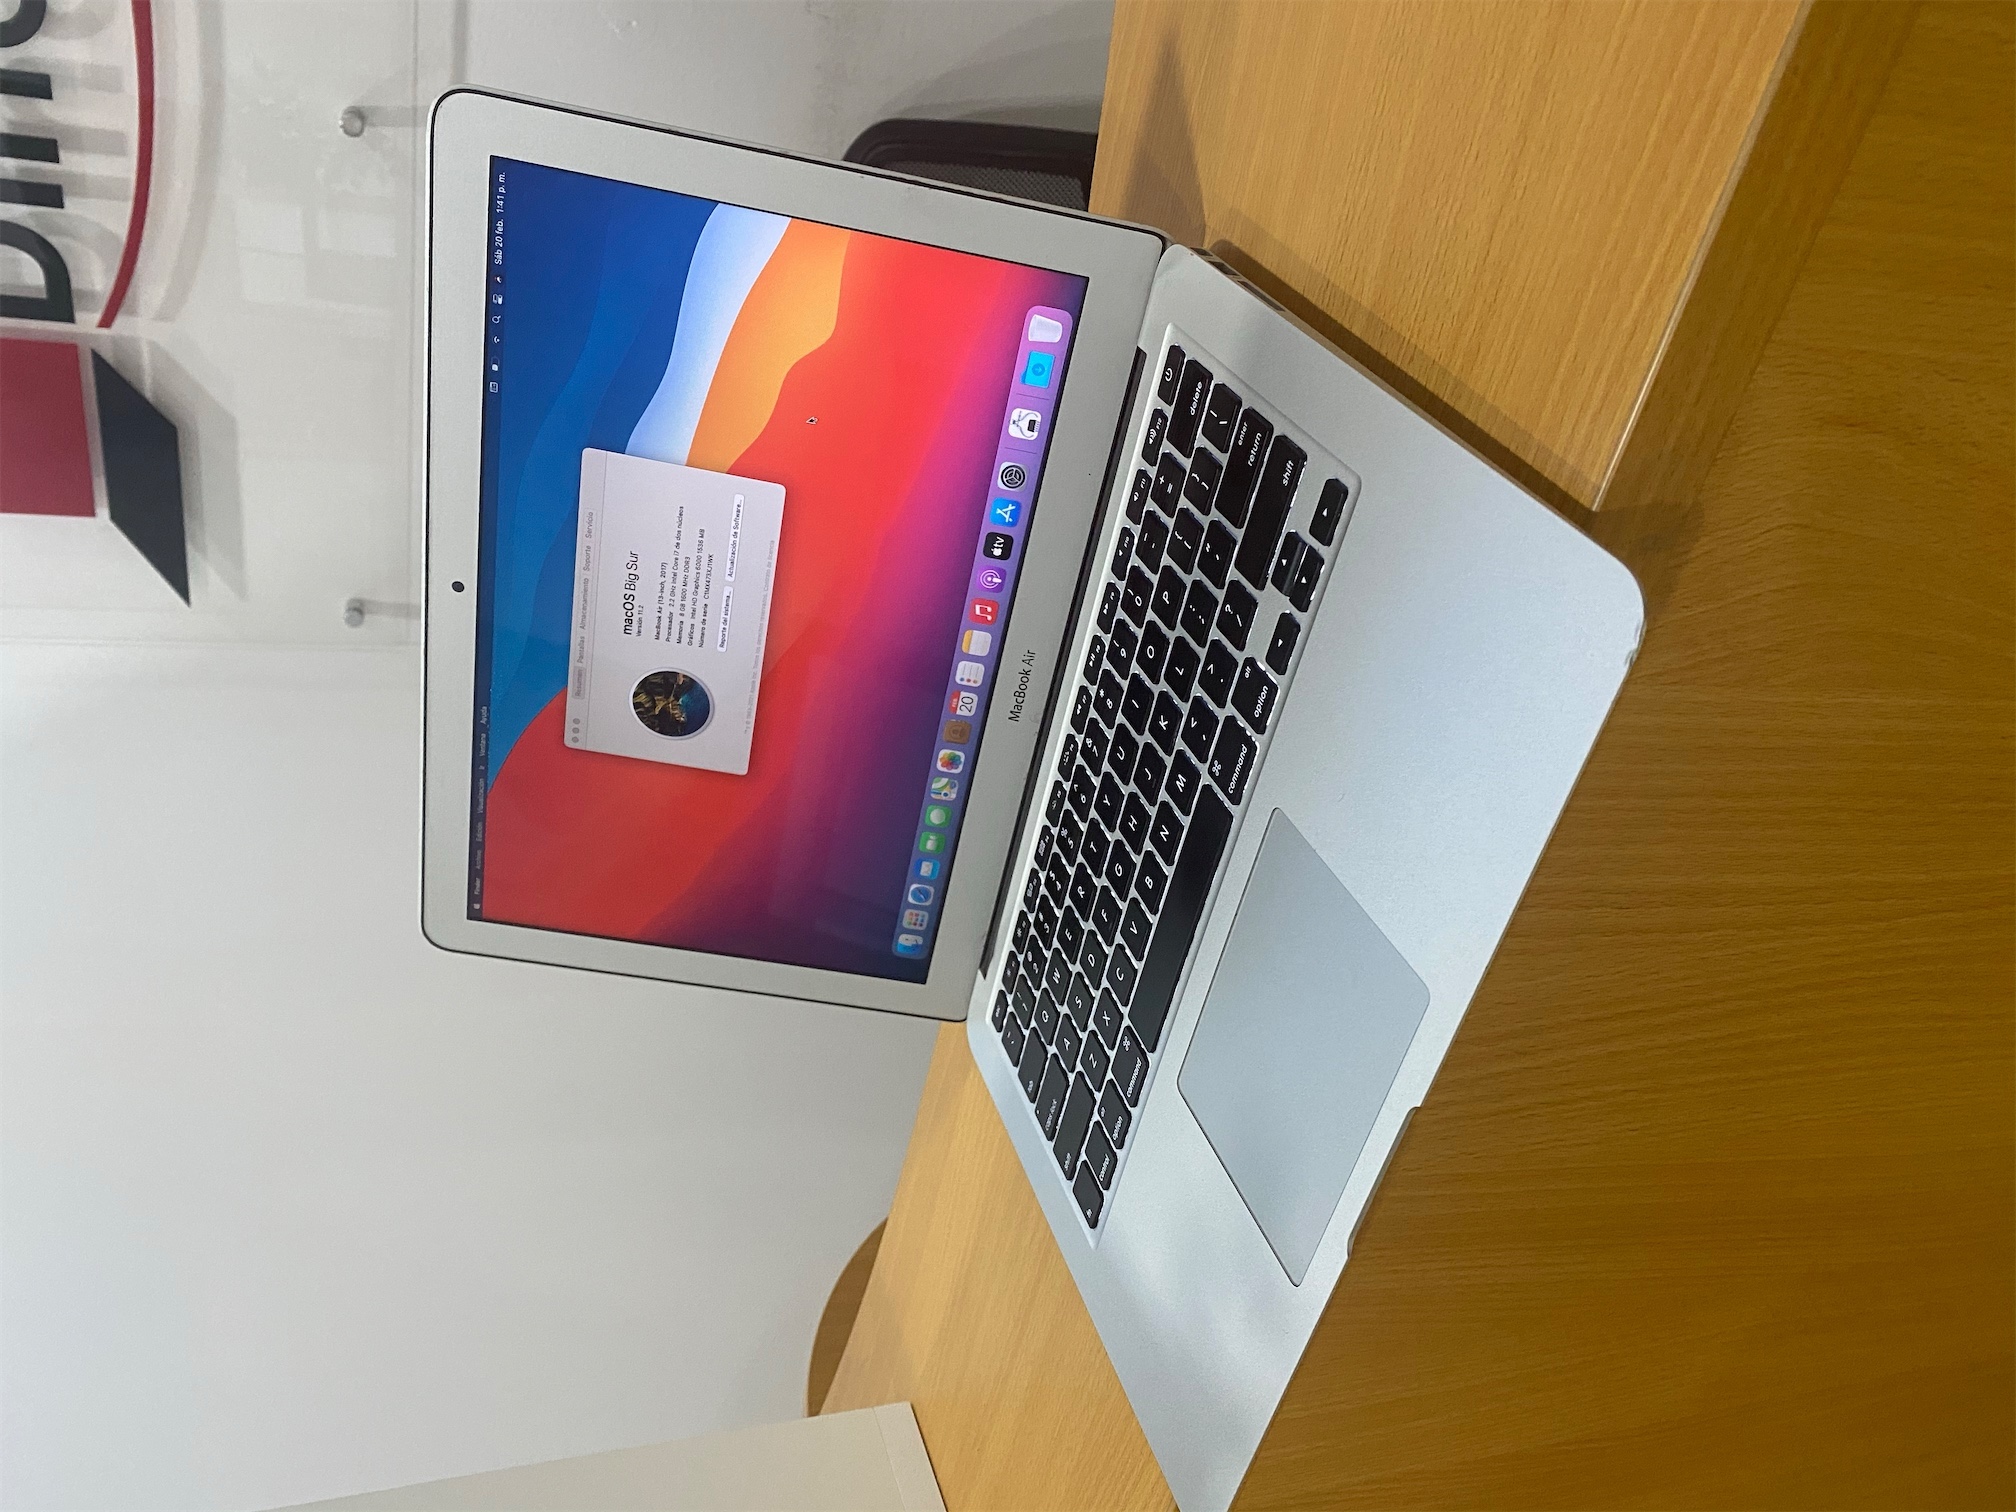 computadoras y laptops - MacBook Air 2015, Core i5 1.8GHz, 8GB Ram, 128GB SSD